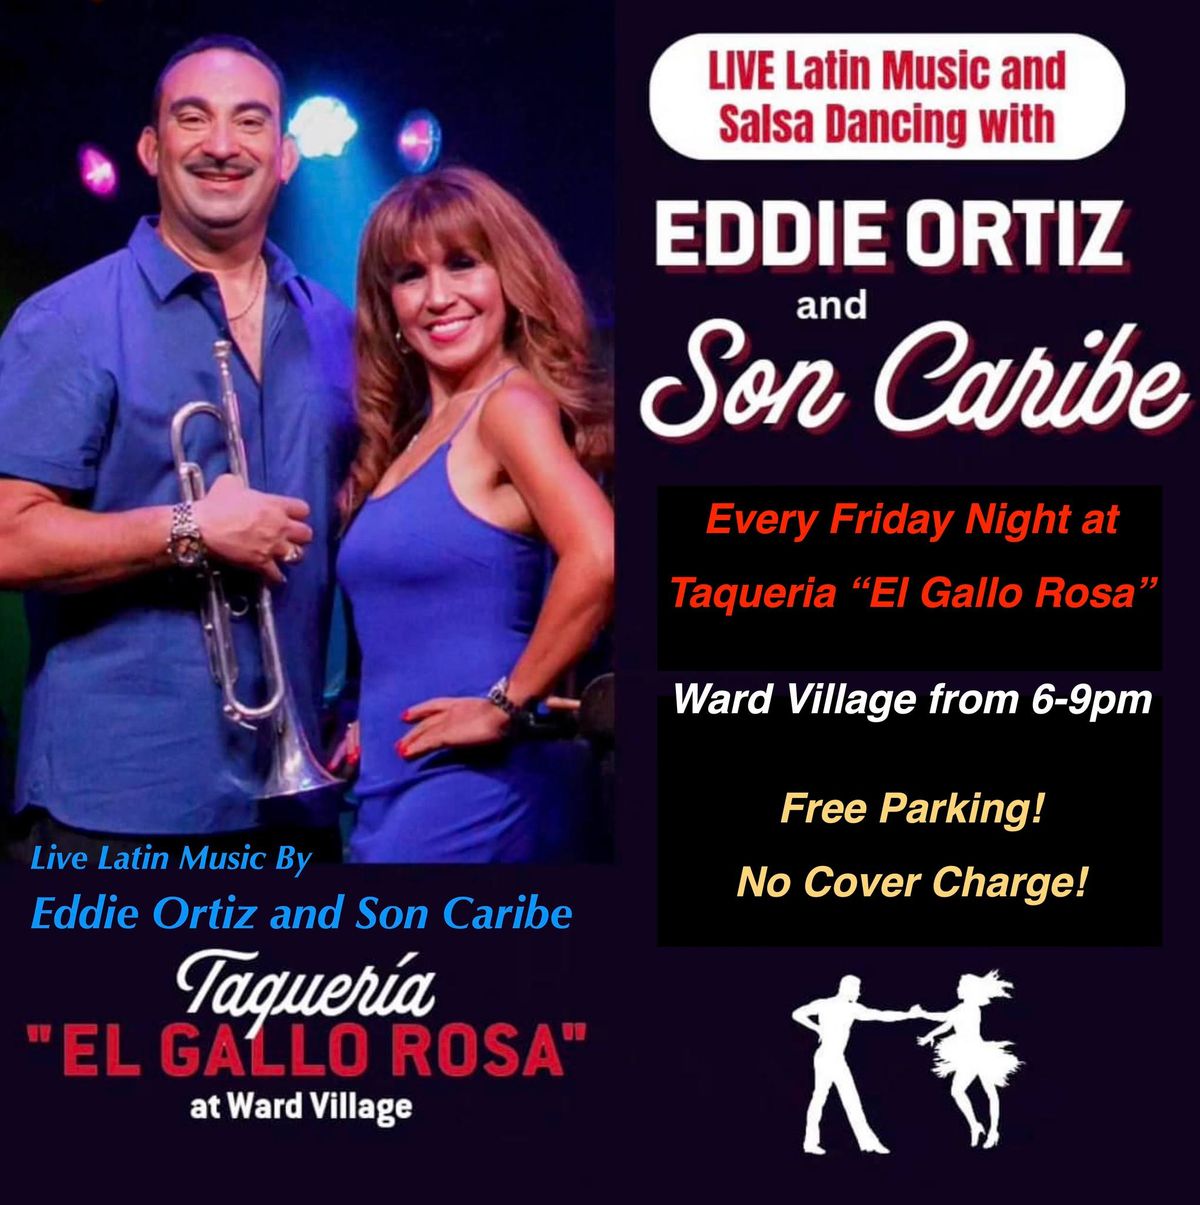 Taqueria El Gallo Rosa presents Live Latin Music and Salsa Dancing with Eddie Ortiz and Son Caribe